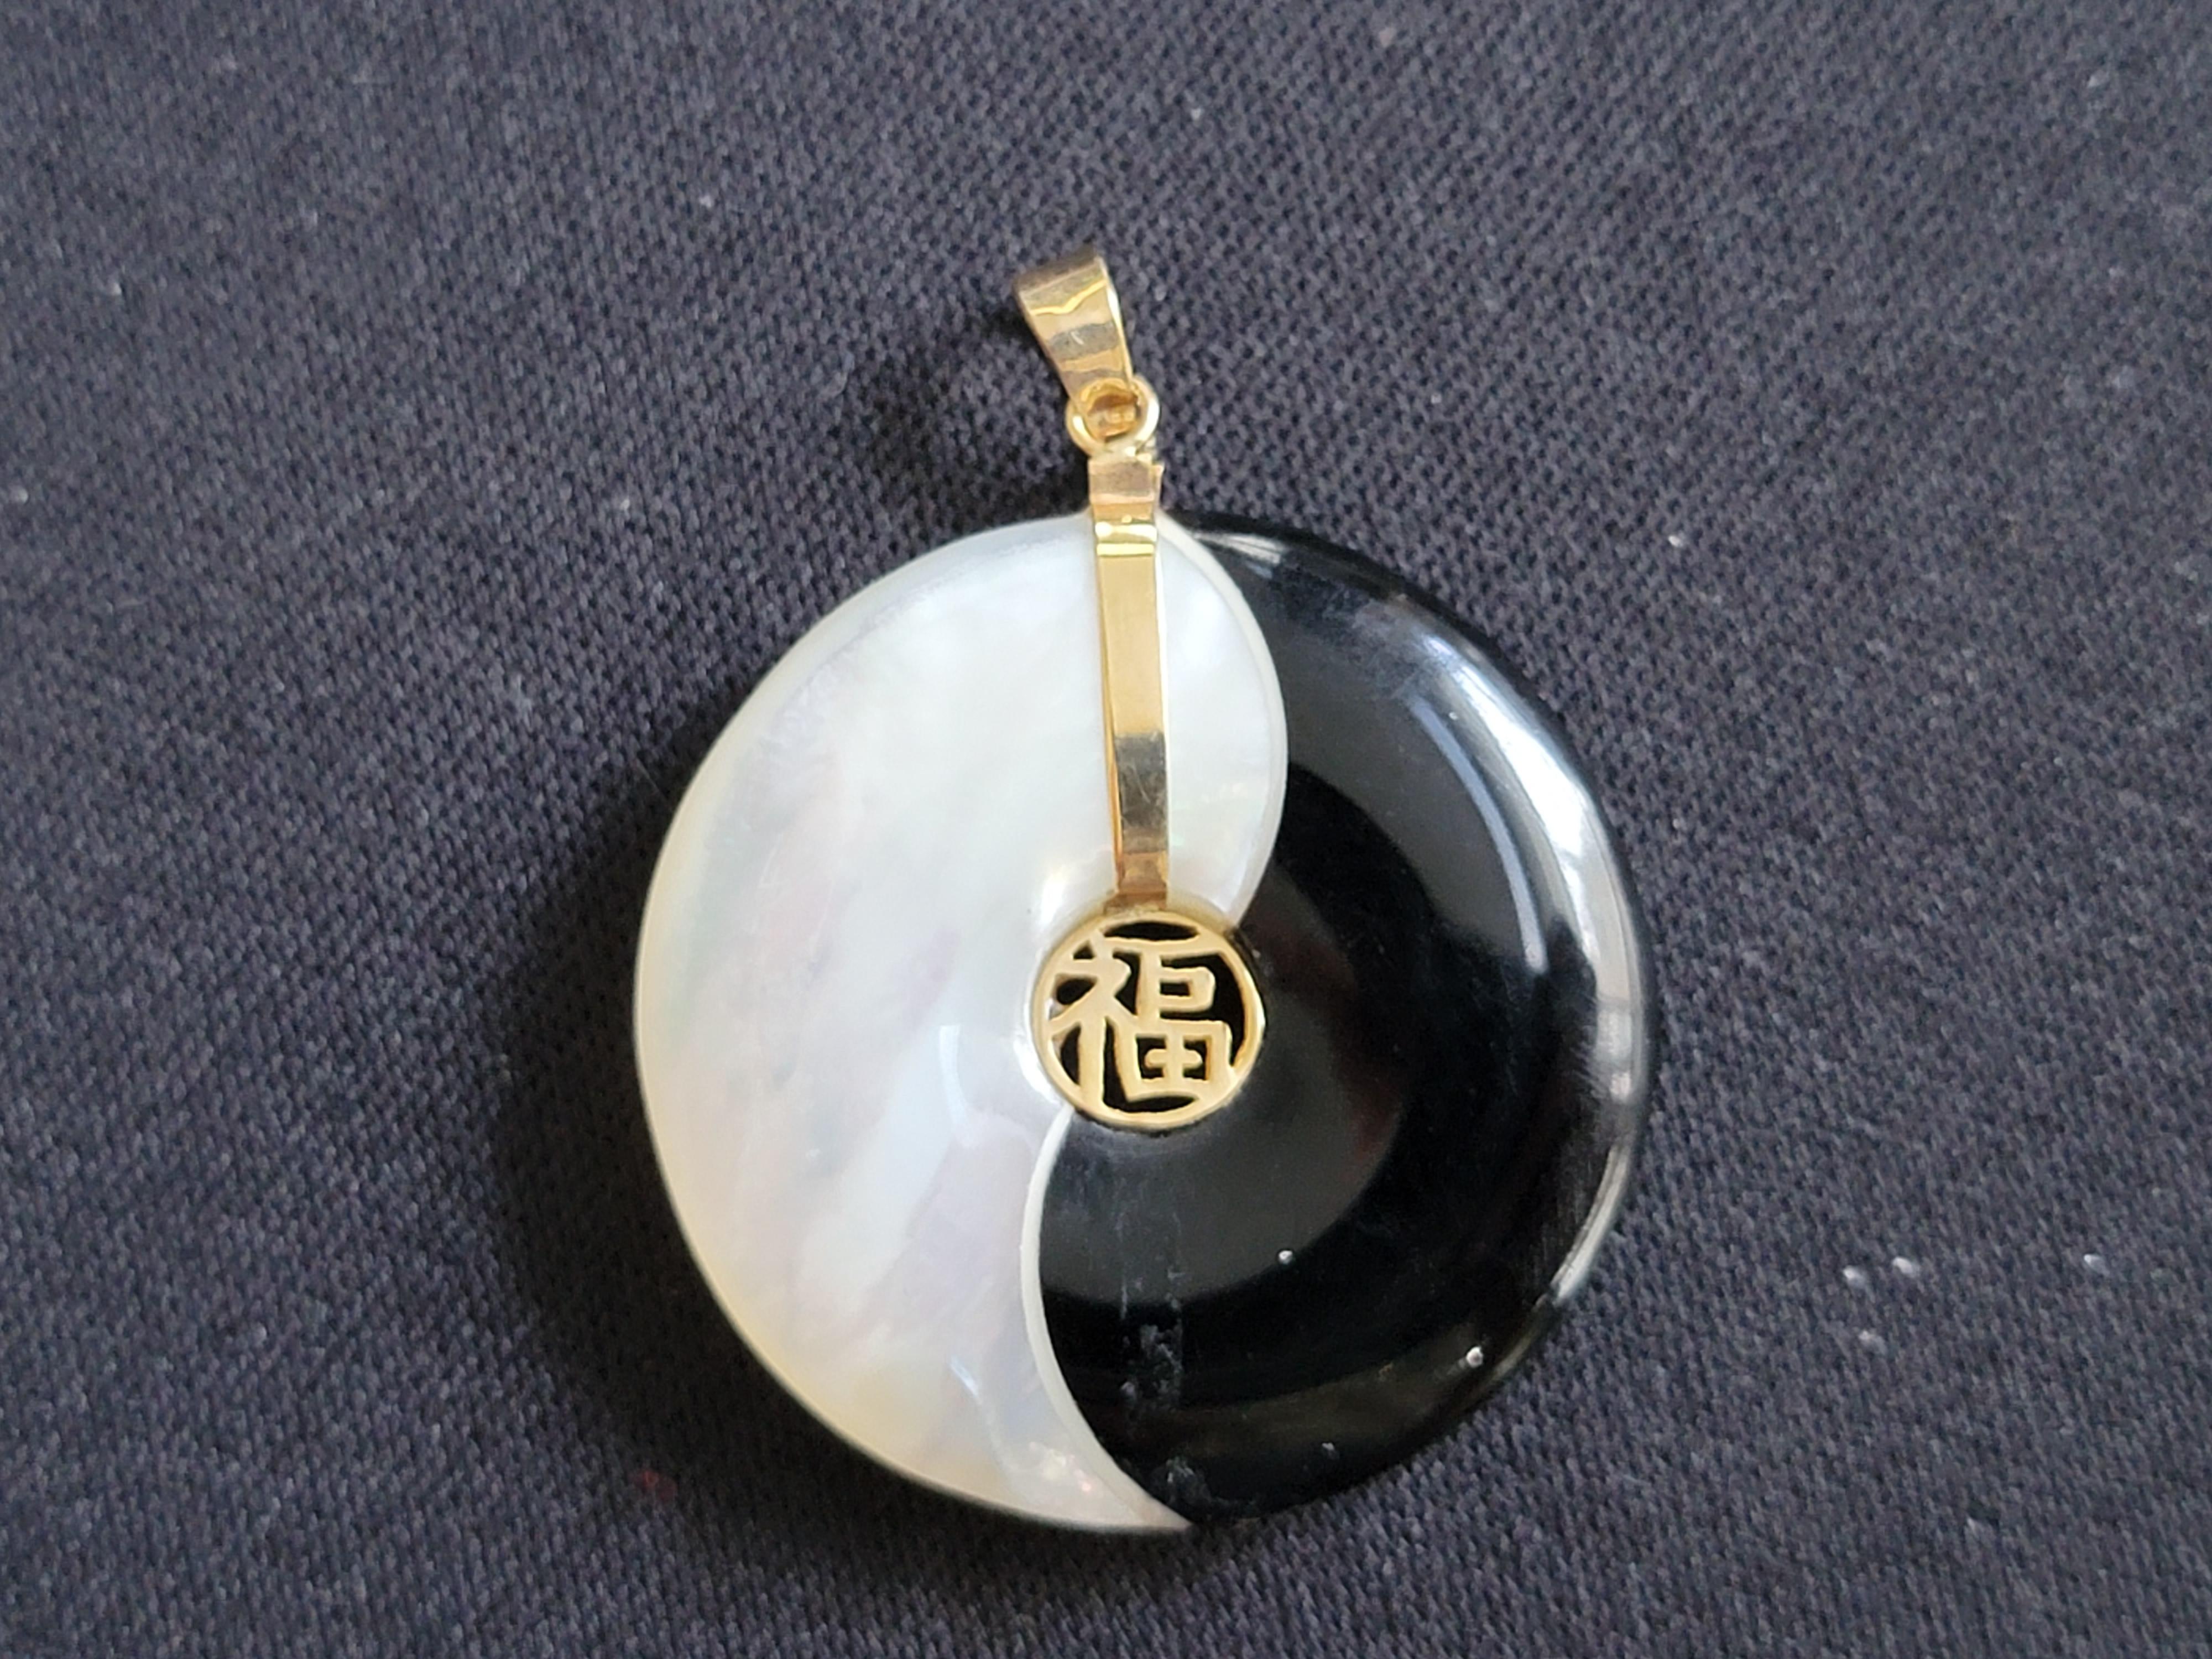 Le pendentif Yin et Yang Fortune (édition dynamique) est une nouvelle version de notre pendentif Yin et Yang Fortune, le plus vendu. Cette édition présente des lignes courbes et des finitions plus brillantes qui témoignent d'une fluidité et d'une